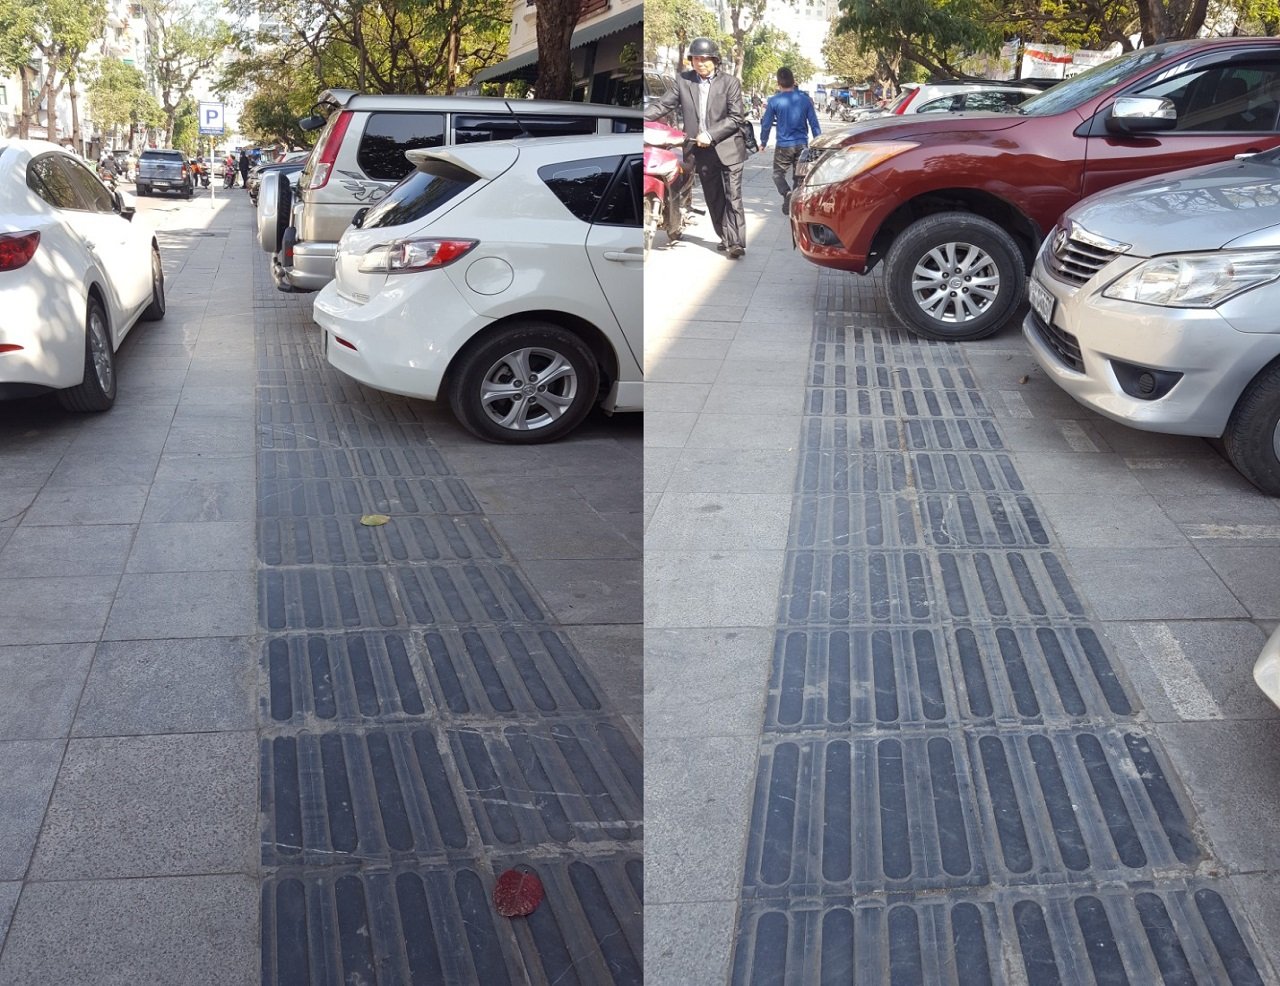 Toàn bộ tuyến đường Yết Kiêu (Hà Nội) được đầu tư tốn kém để làm đường dành cho người khiếm thị nhưng lại bị các xe ô tô chiếm dụng làm nơi đỗ xe và không người khuyết tật nào có thể di chuyển qua đây